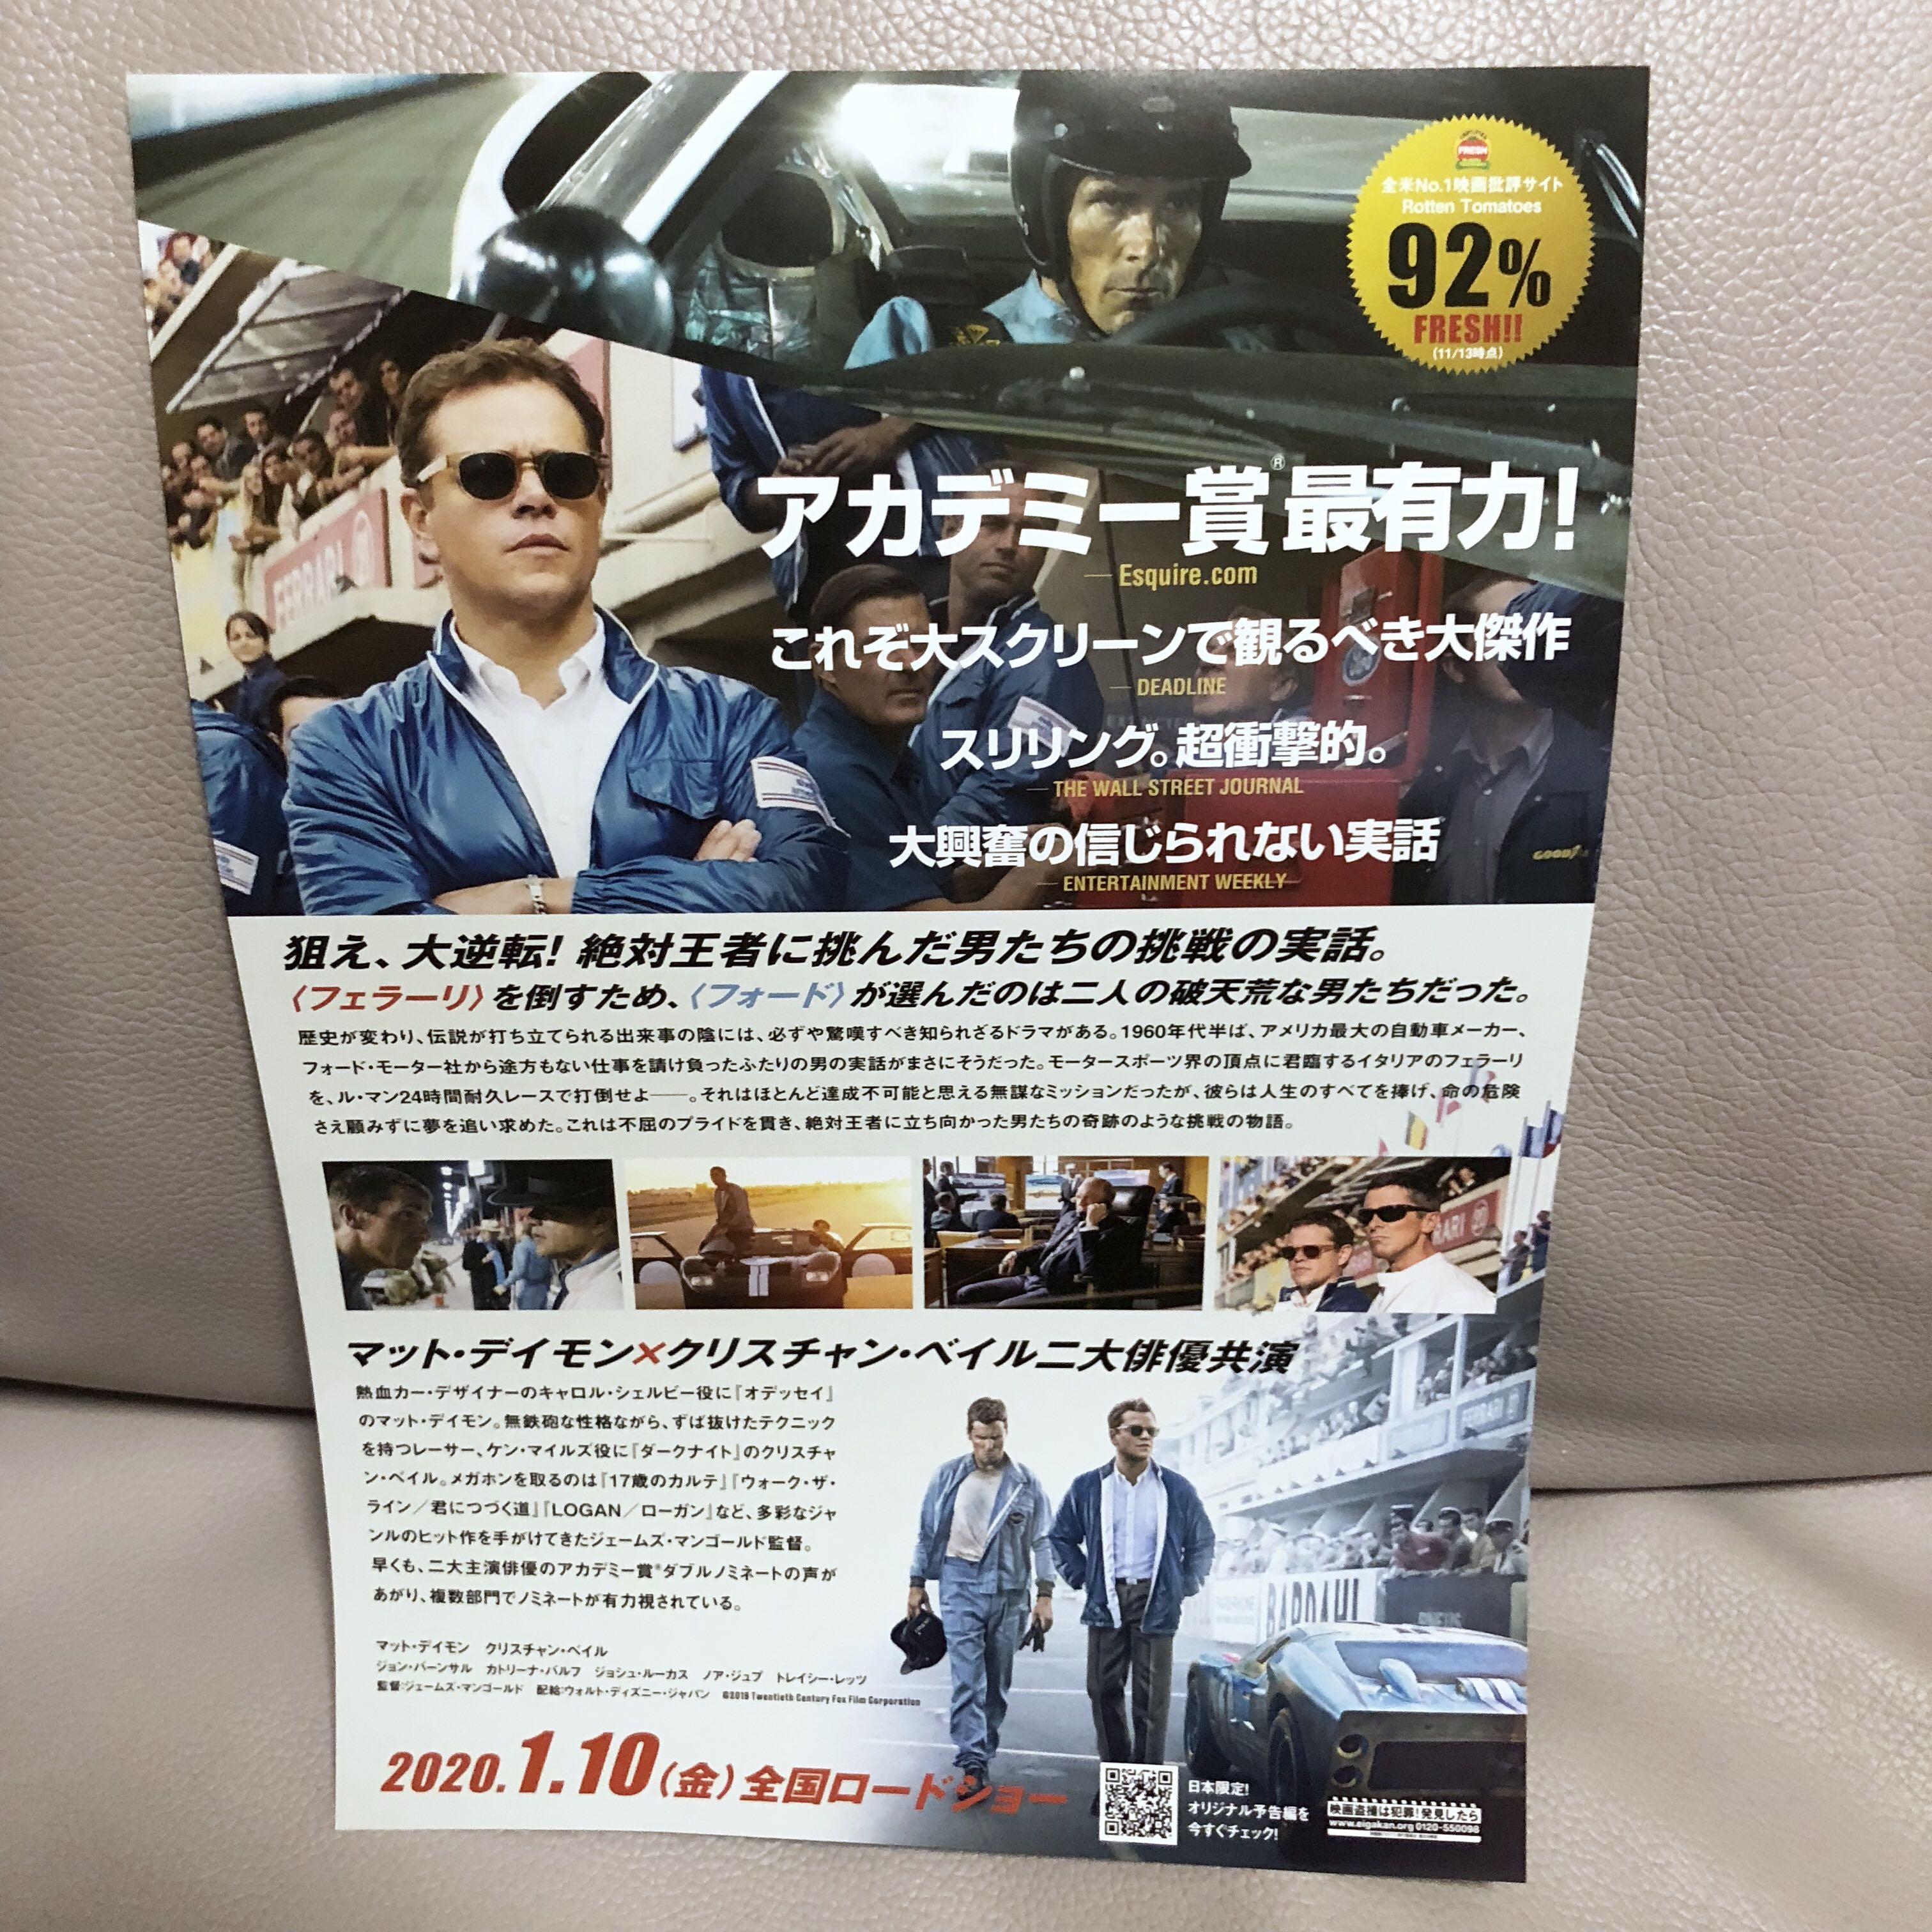 最新 電影 極速傳奇 福特決戰法拉利 Ford V Ferrari 麥迪文基斯頓比爾主演堂本光一為宣傳大使日本宣傳dm 日本明星 Carousell